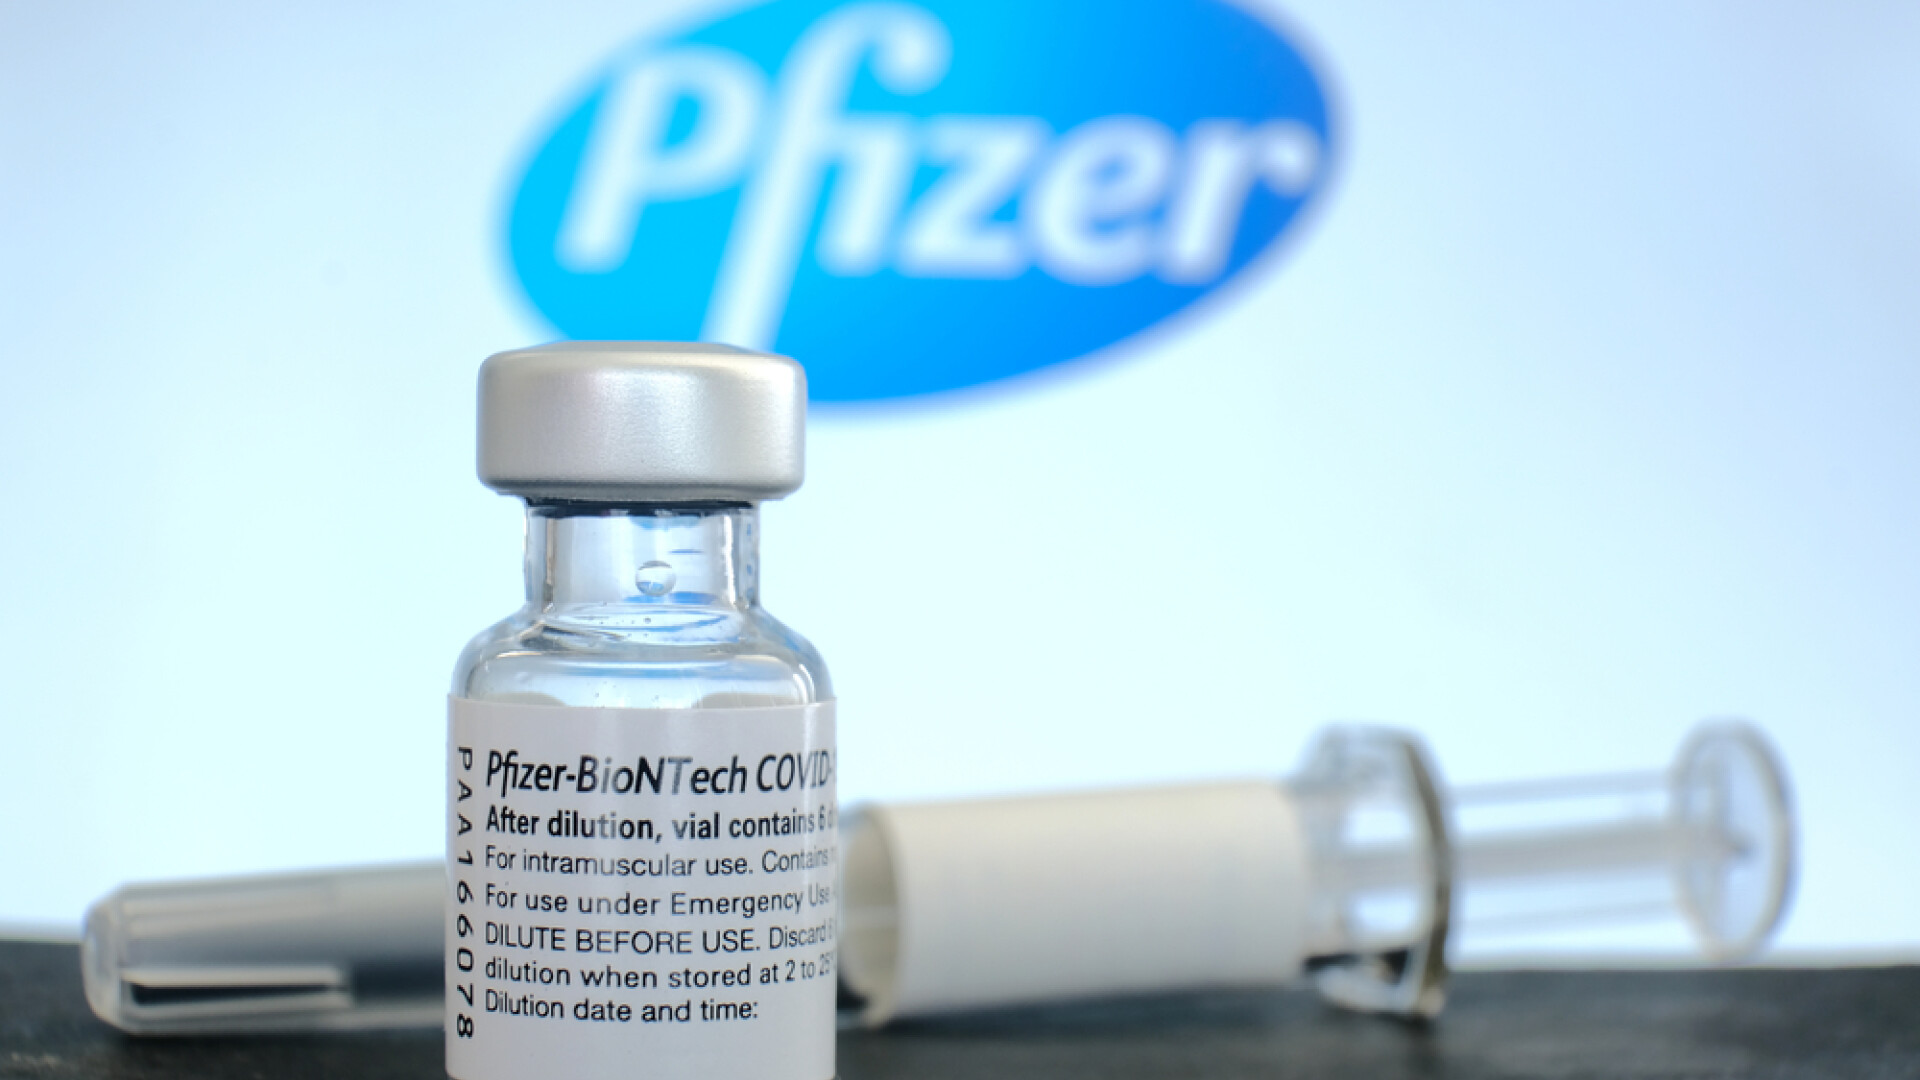 Fotbalistul încheie cariera și dă în judecată Pfizer-BioNTech pentru efecte adverse ale vaccinului anticovid